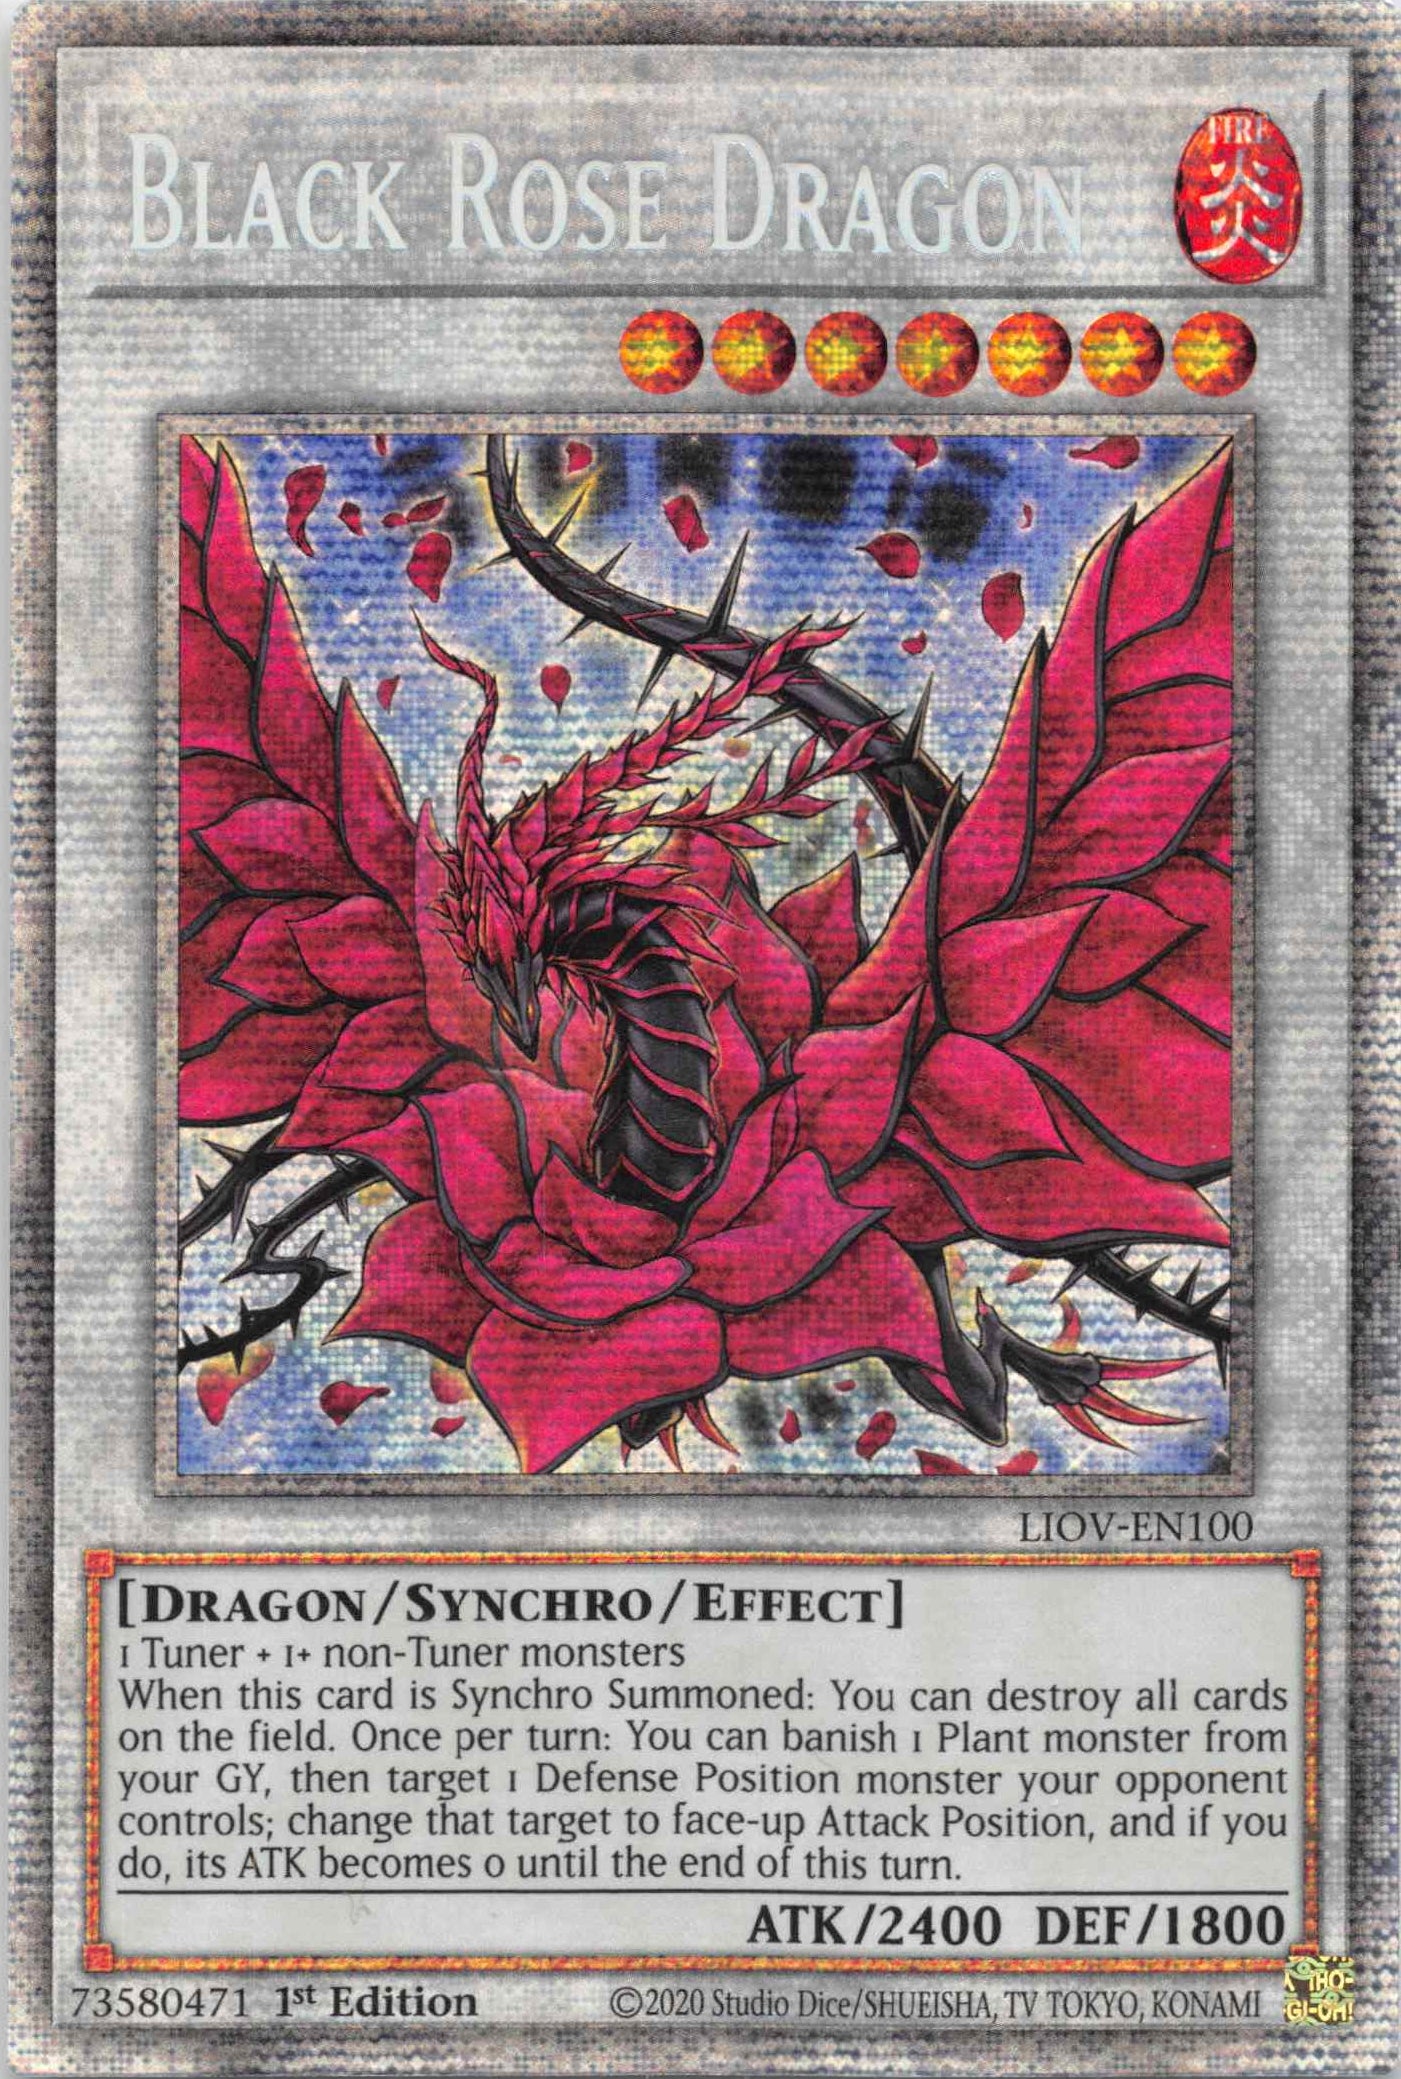 Black Rose Dragon [LIOV-EN100] Starlight Rare | Game Master's Emporium (The New GME)